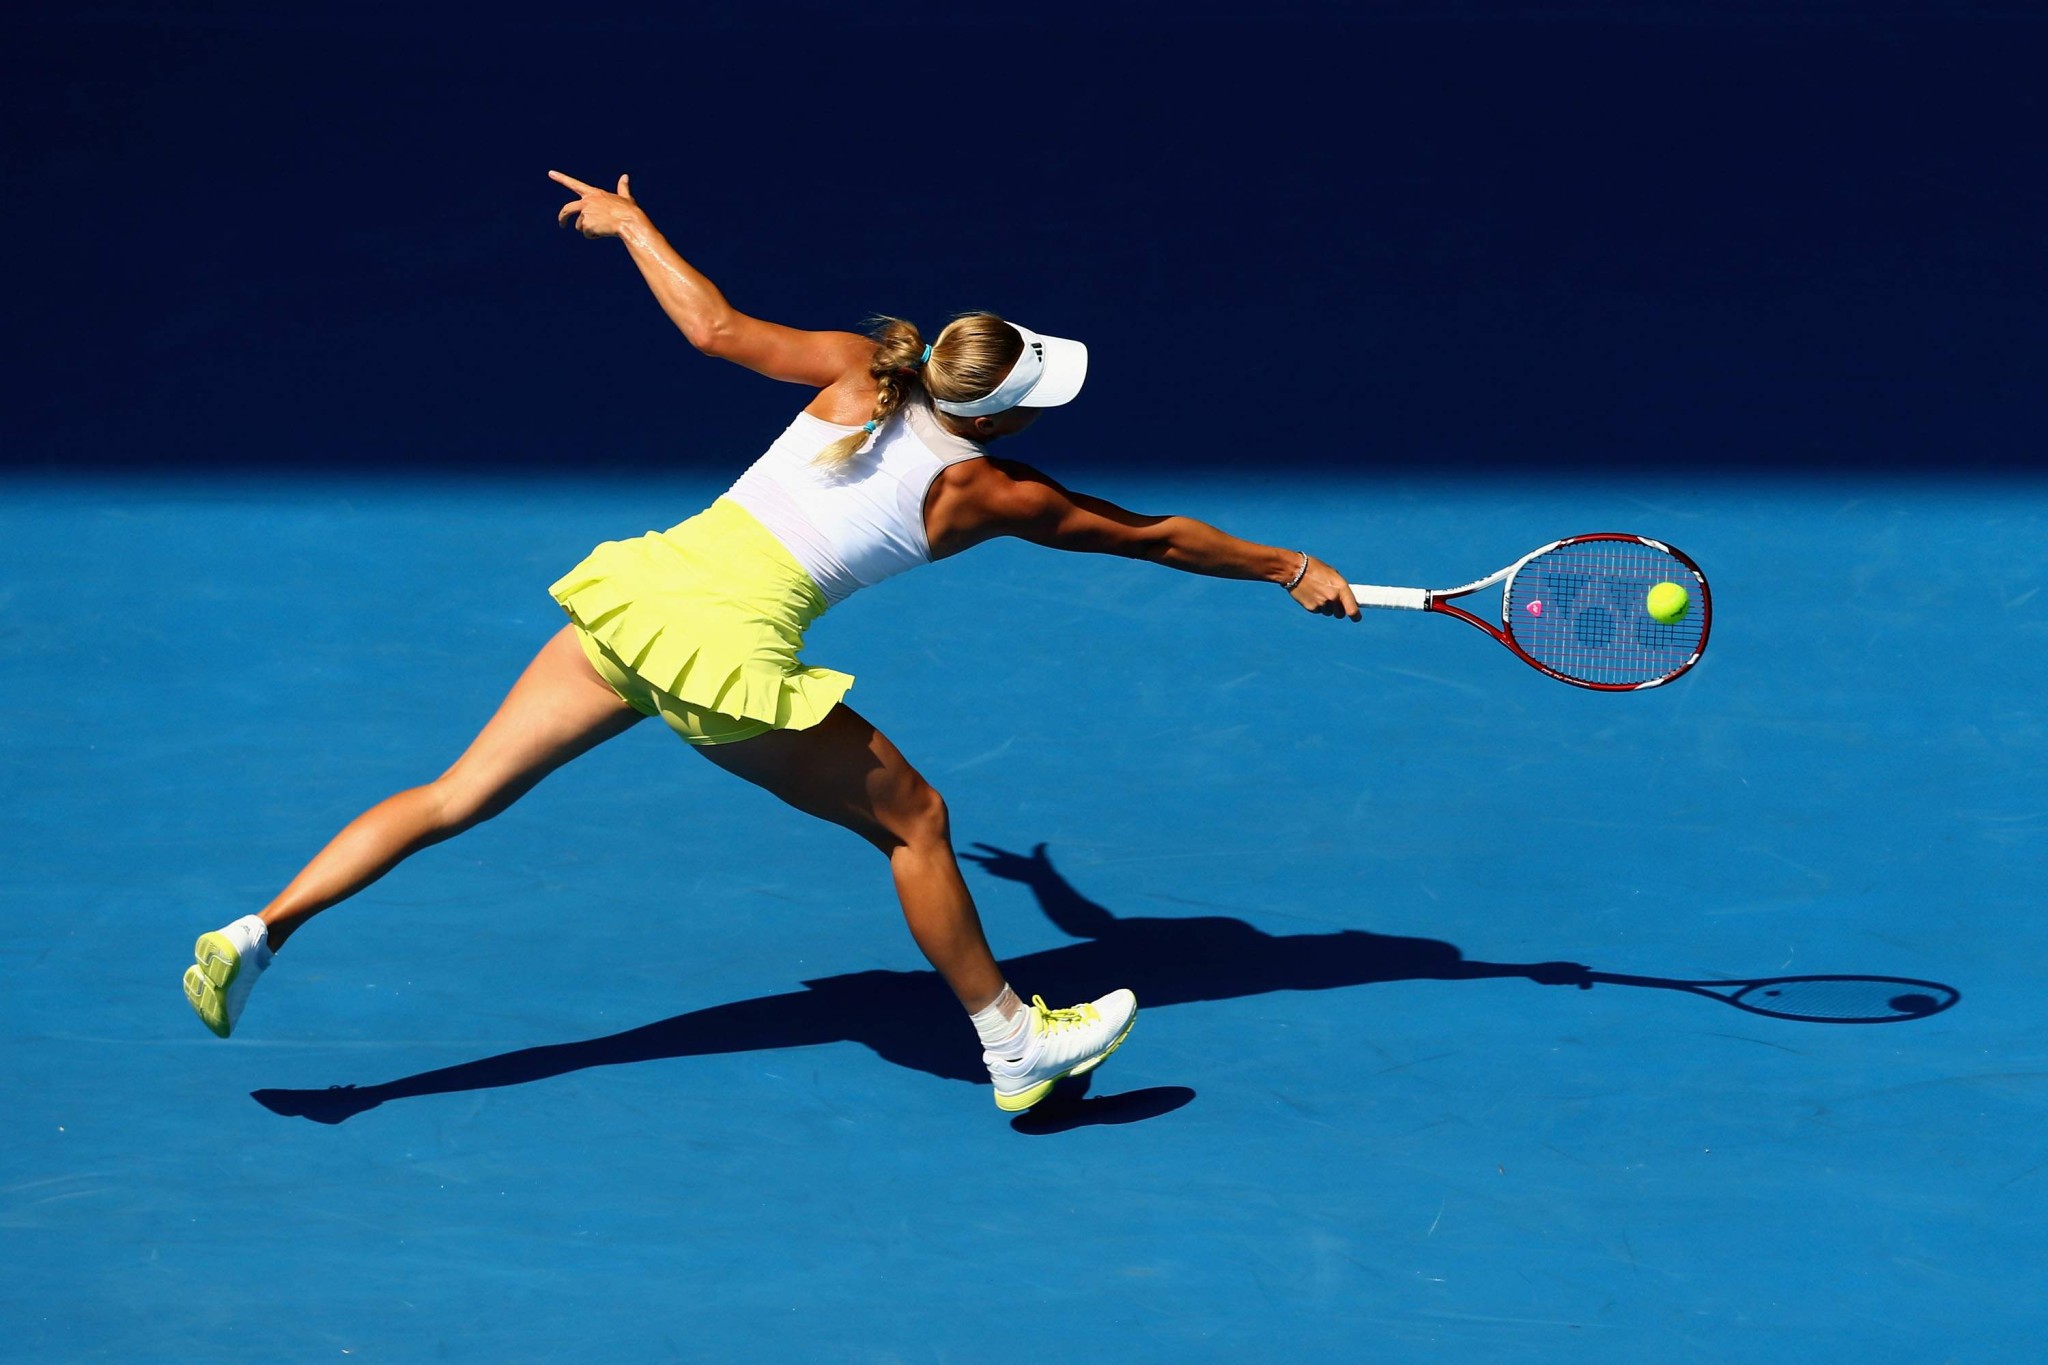 Caroline wozniacki mostrando sudato scollatura camelote al 2013 australiano aperto
 #75243042